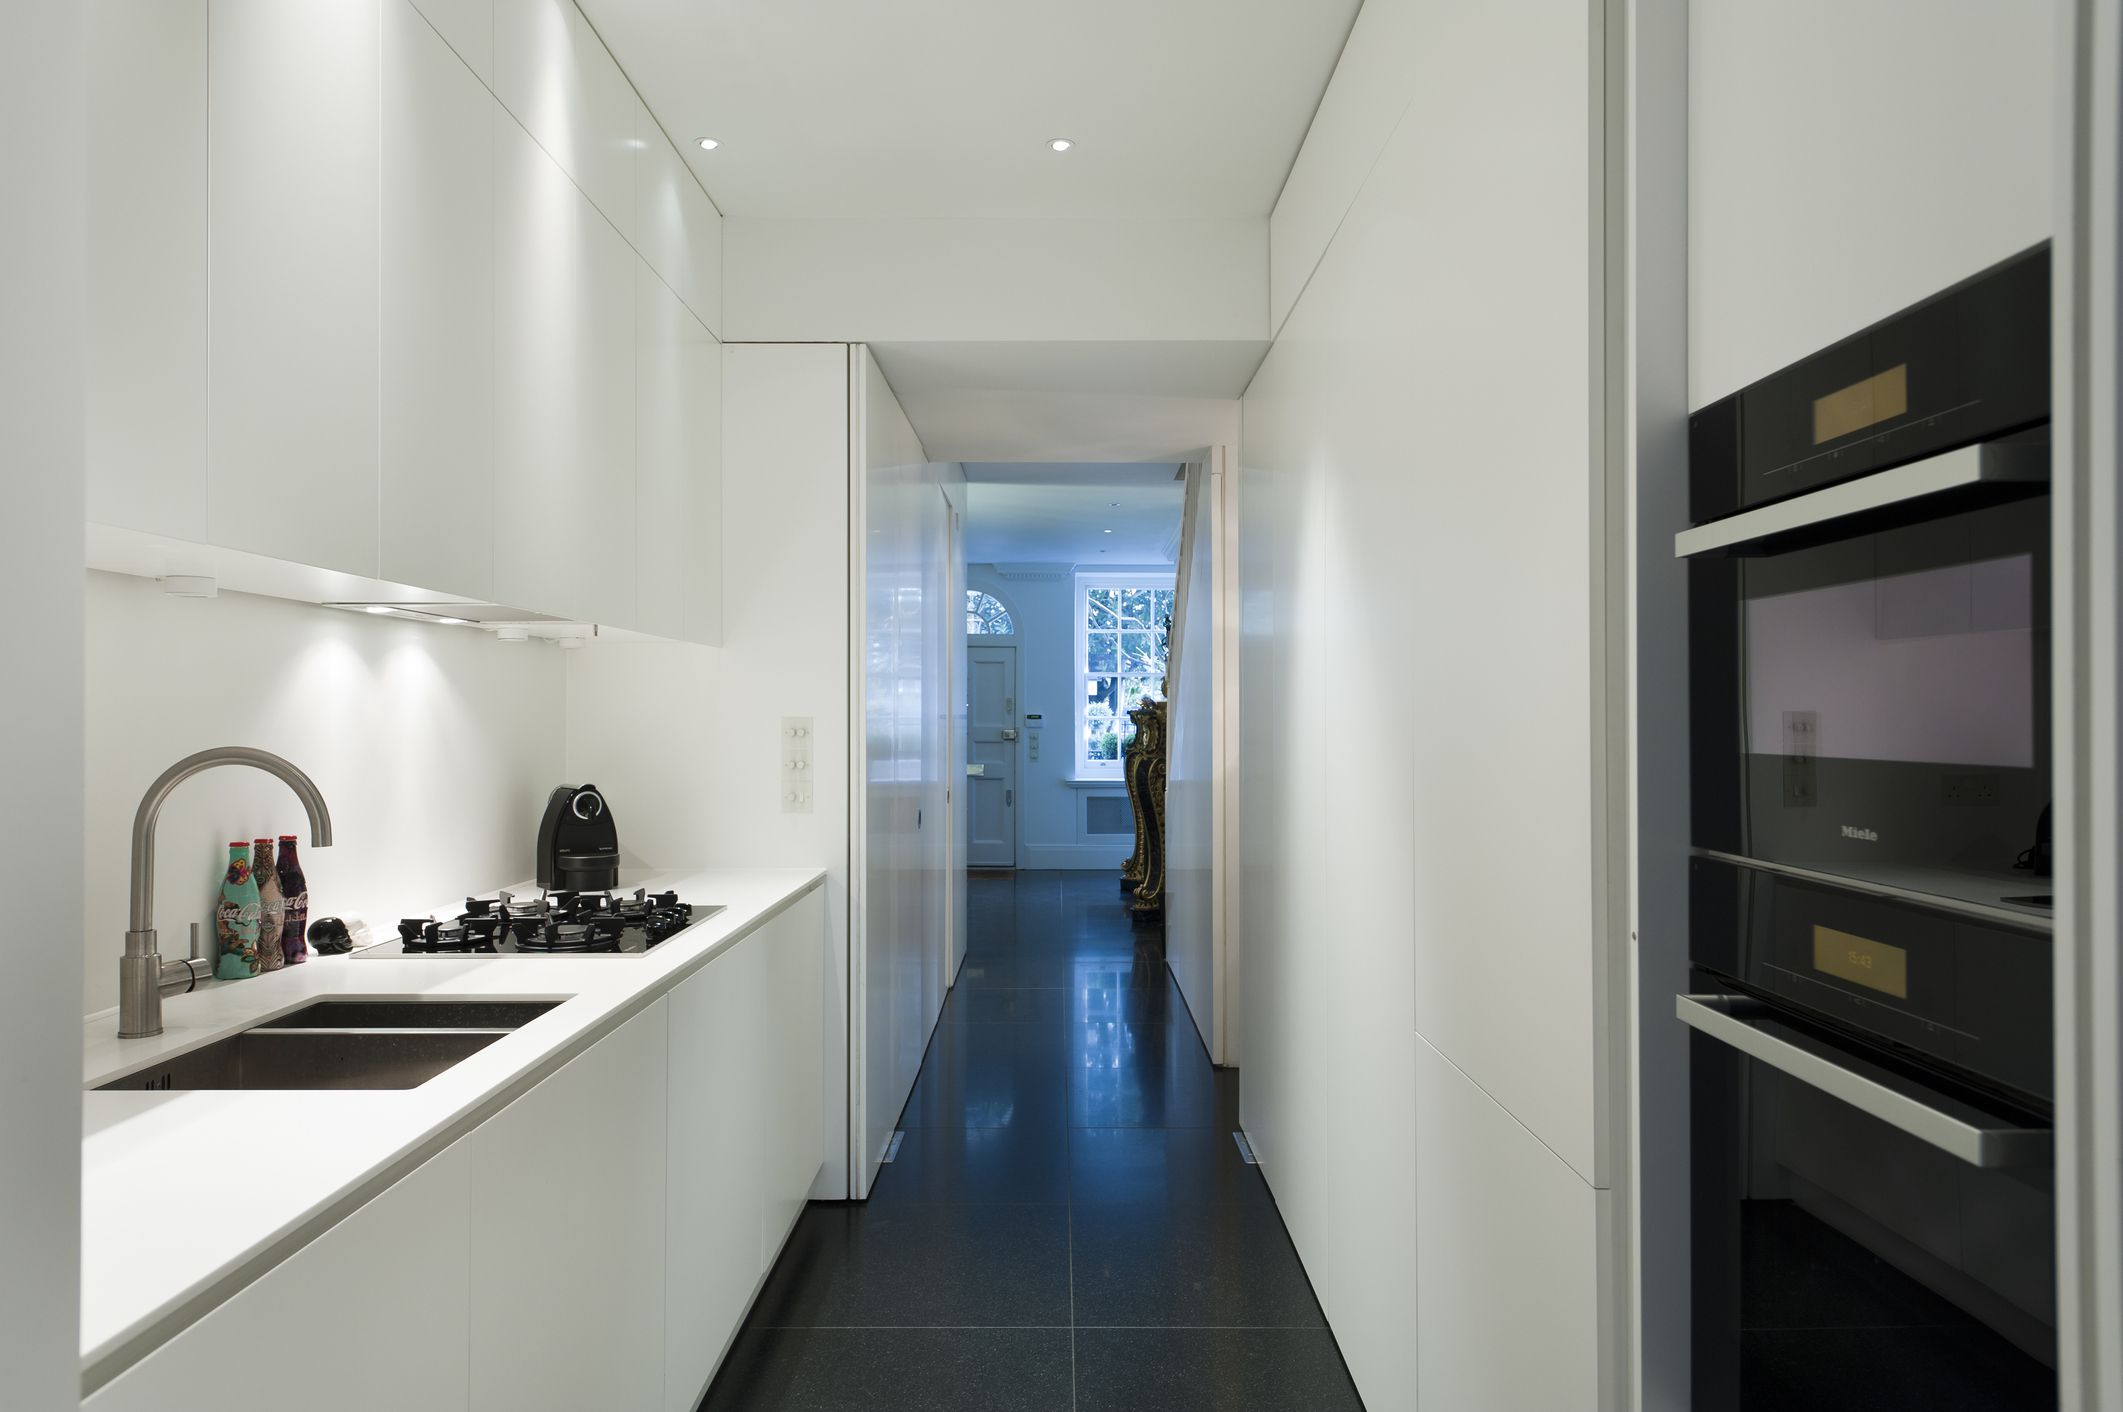 Corridor Style Kitchen Layouts